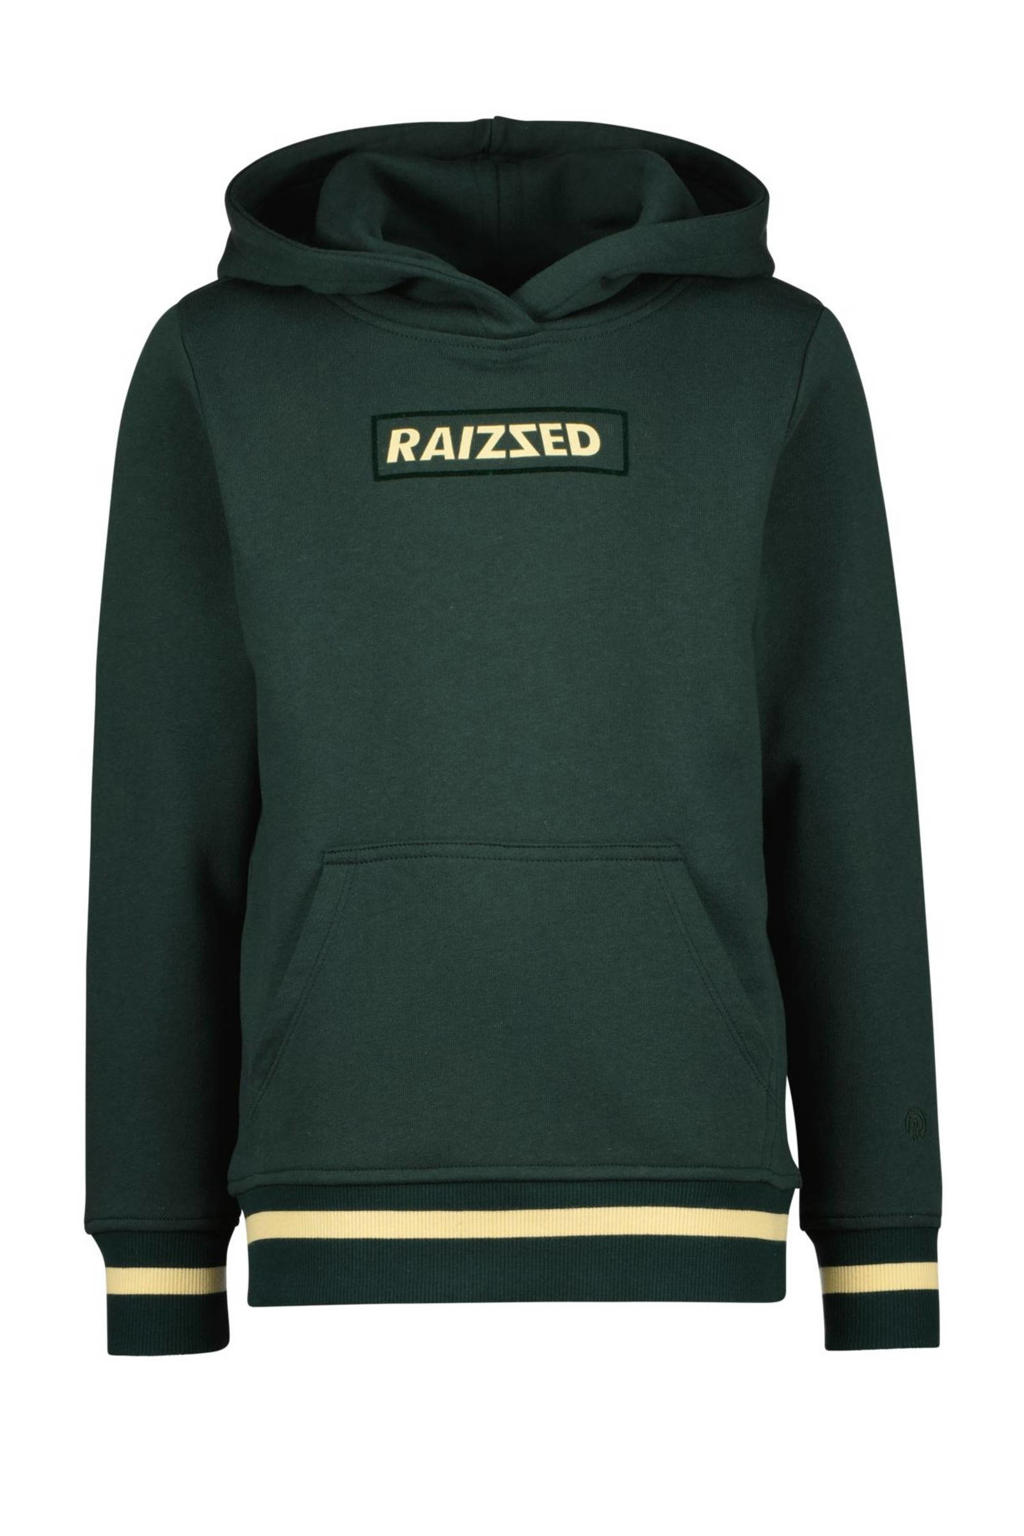 Raizzed hoodie Westend met logo donkergroen